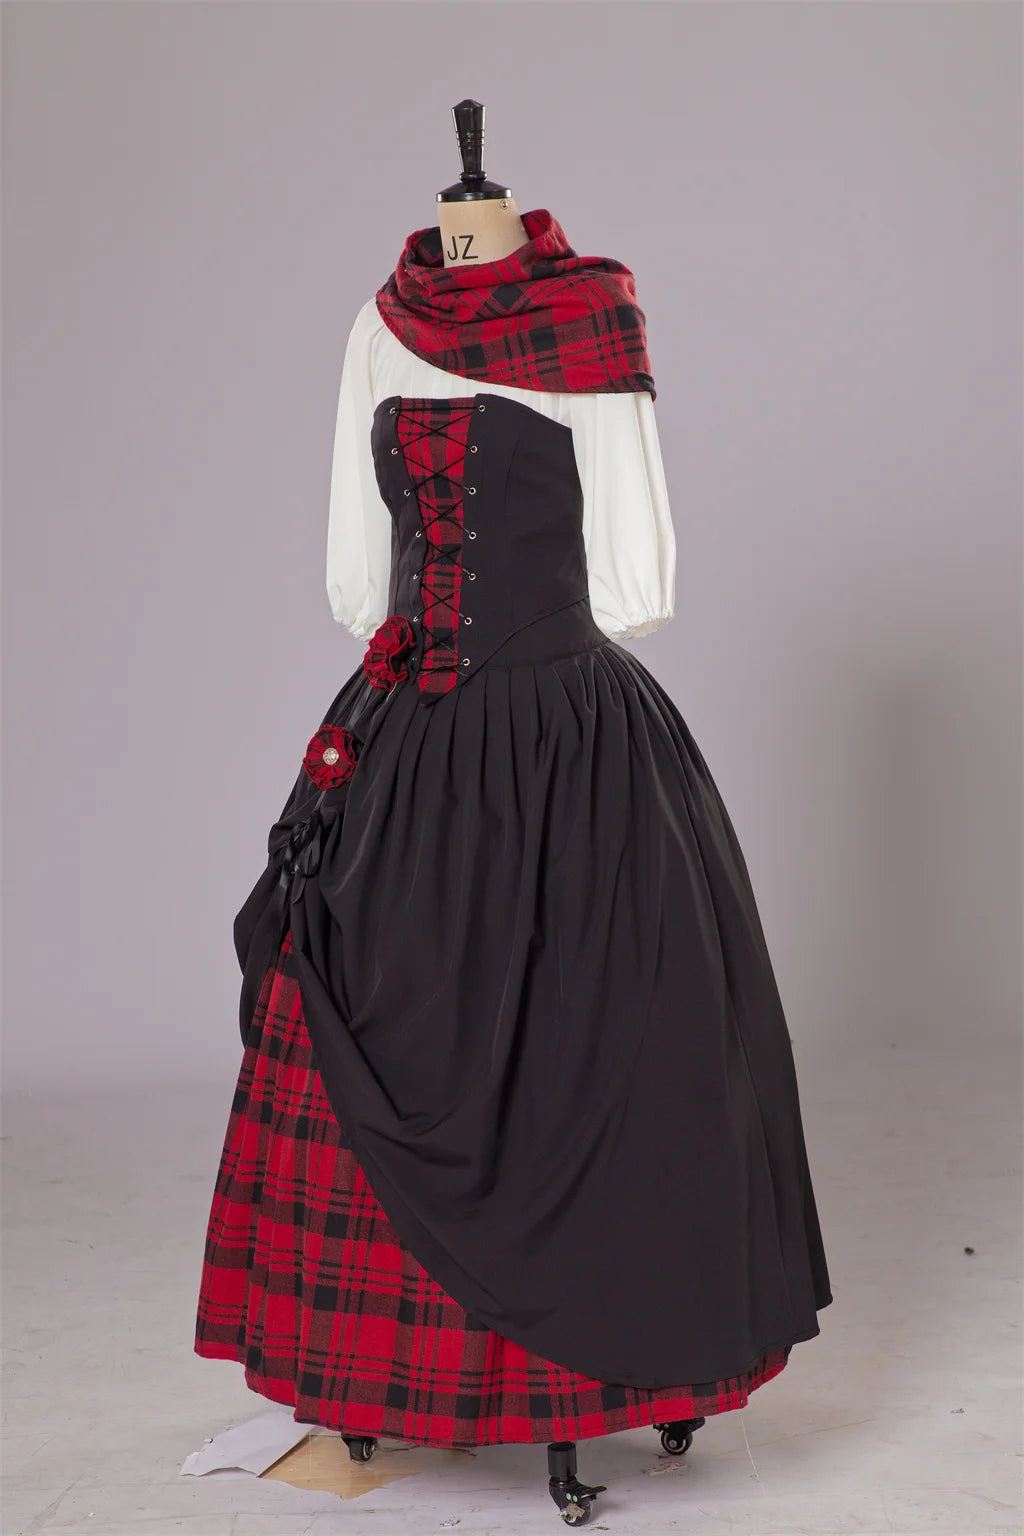 TV Outlander Claire Fraser disfraz Cosplay vestido Claire Fraser Highland vestido Medieval rococó trajes escoceses para mujeres